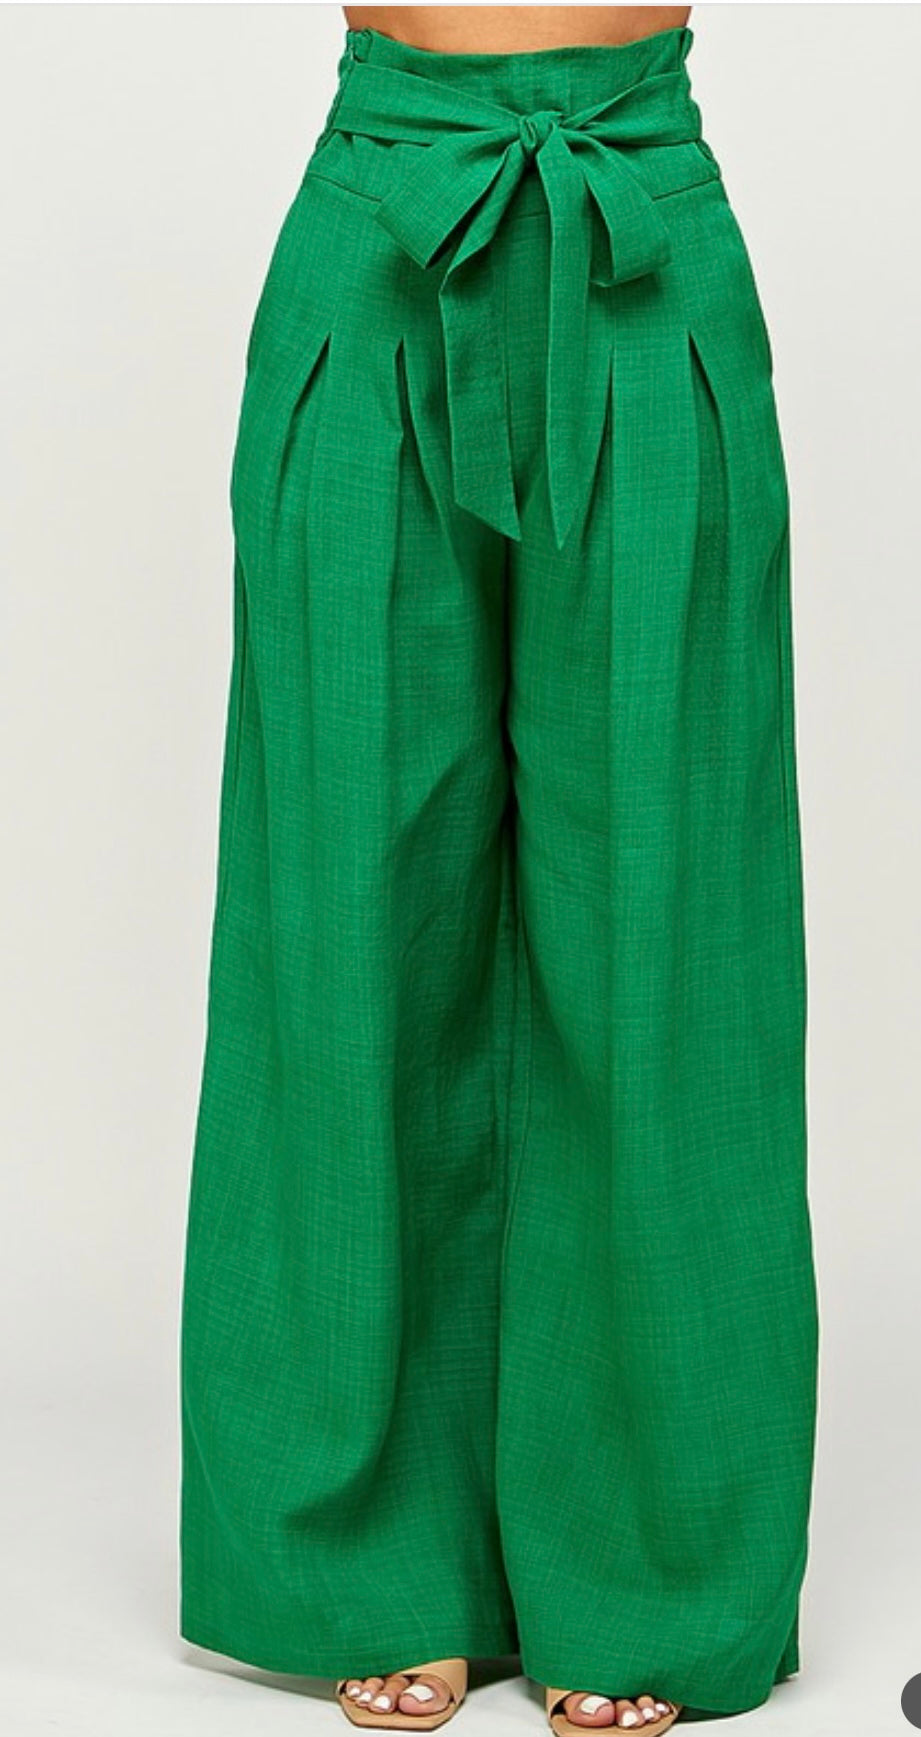 Demi Super High Waist Pants (Green)